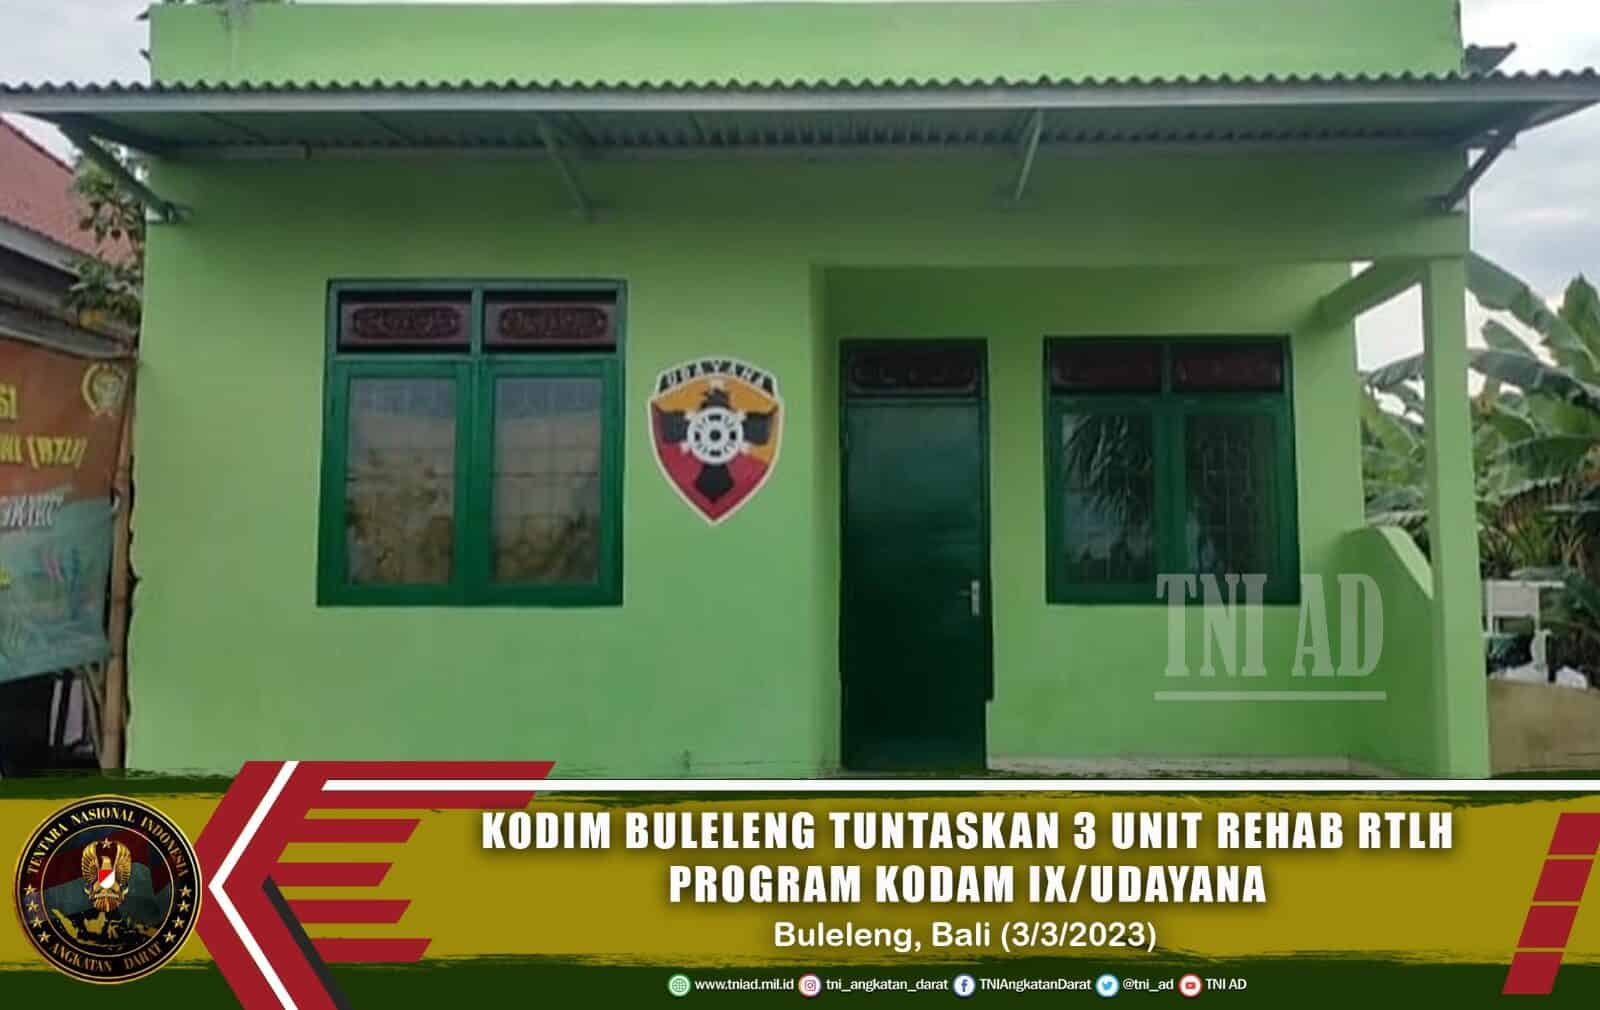 Kodim Buleleng Tuntaskan 3 Unit Rehab RTLH Program Kodam IX/Udayana